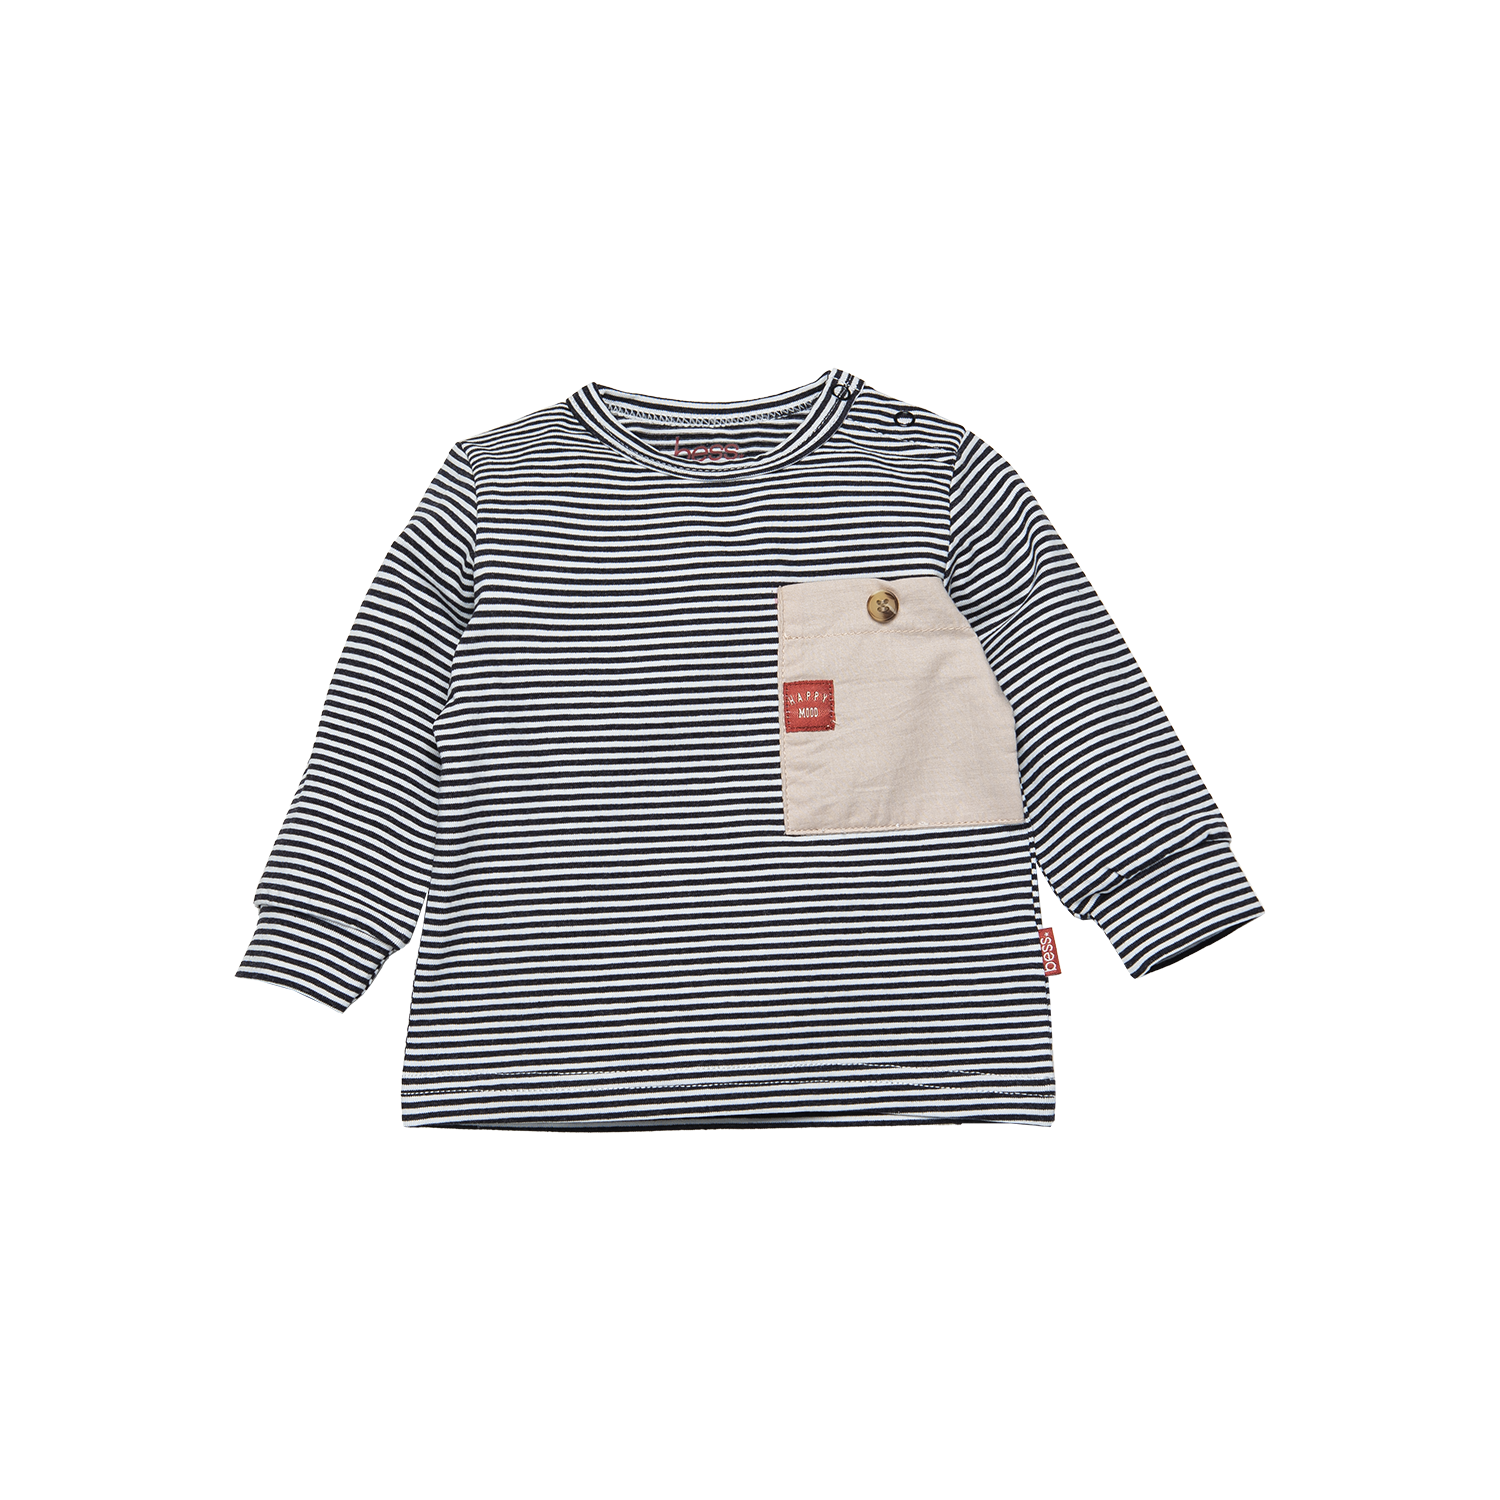 Jongens Shirt Pinstripe van B.E.S.S. in de kleur Anthracite in maat 68.